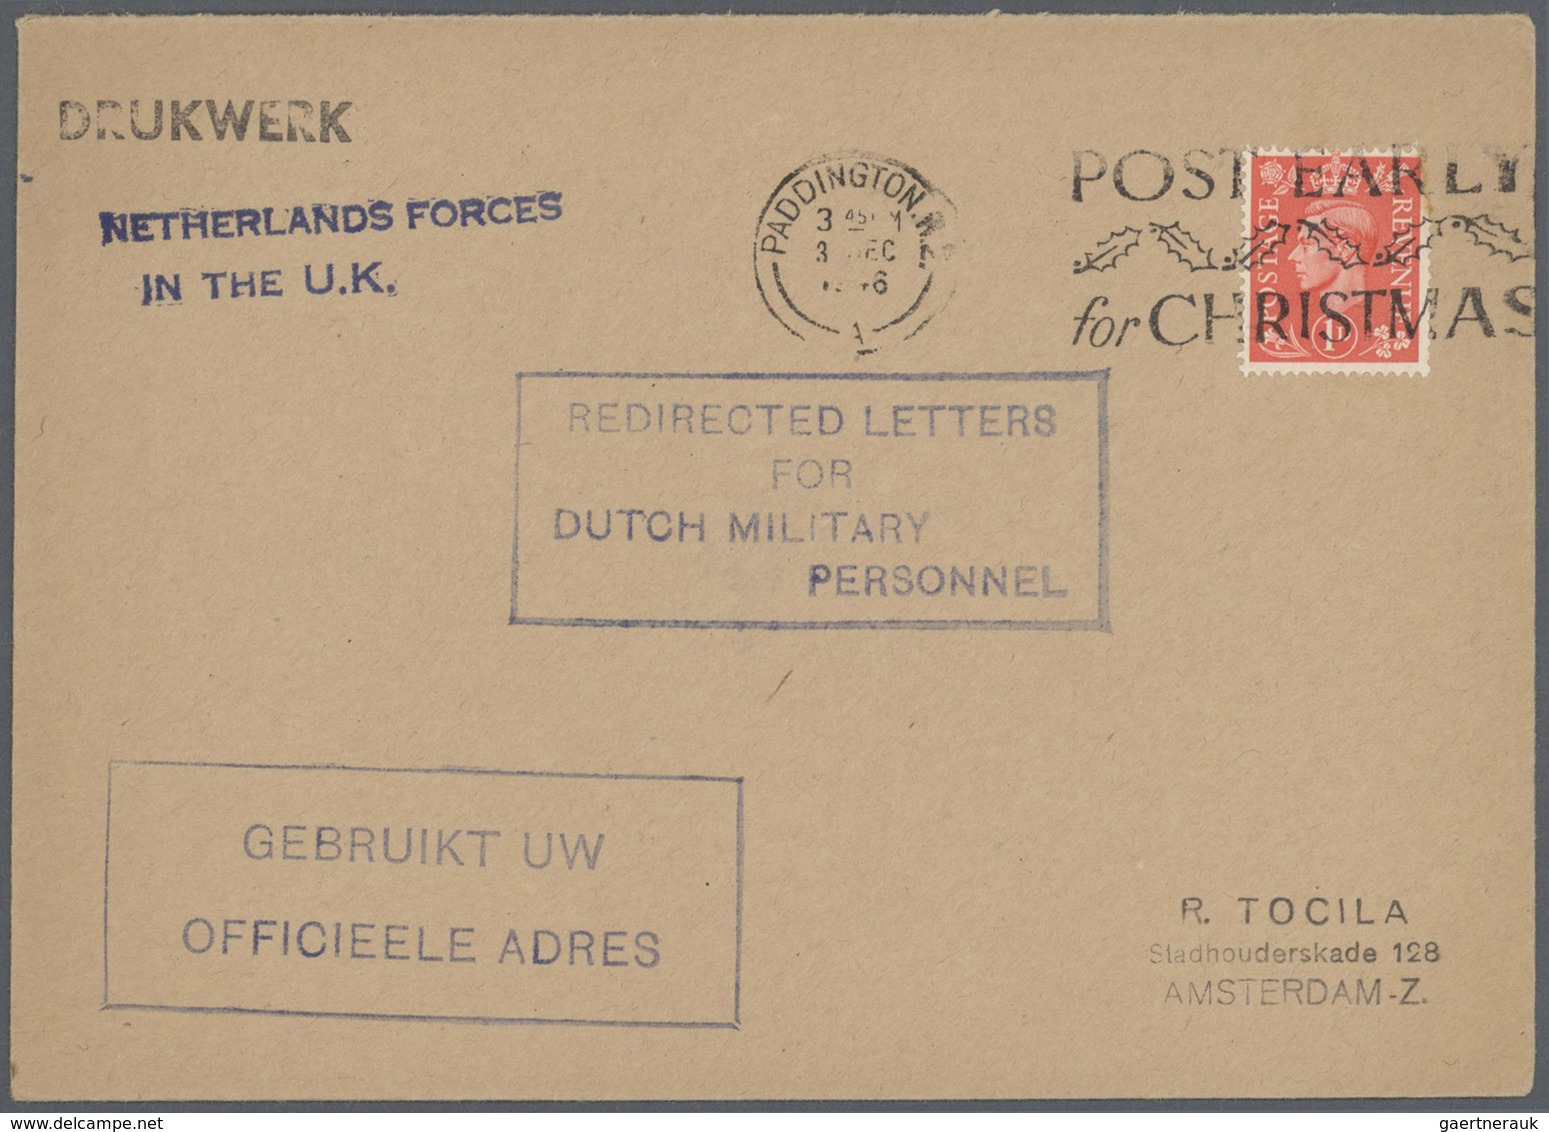 27468 Niederlande: 1946 - 1998, umfangreiche Briefepartie von ca. 220 Belegen mit vielen besseren Frankatu